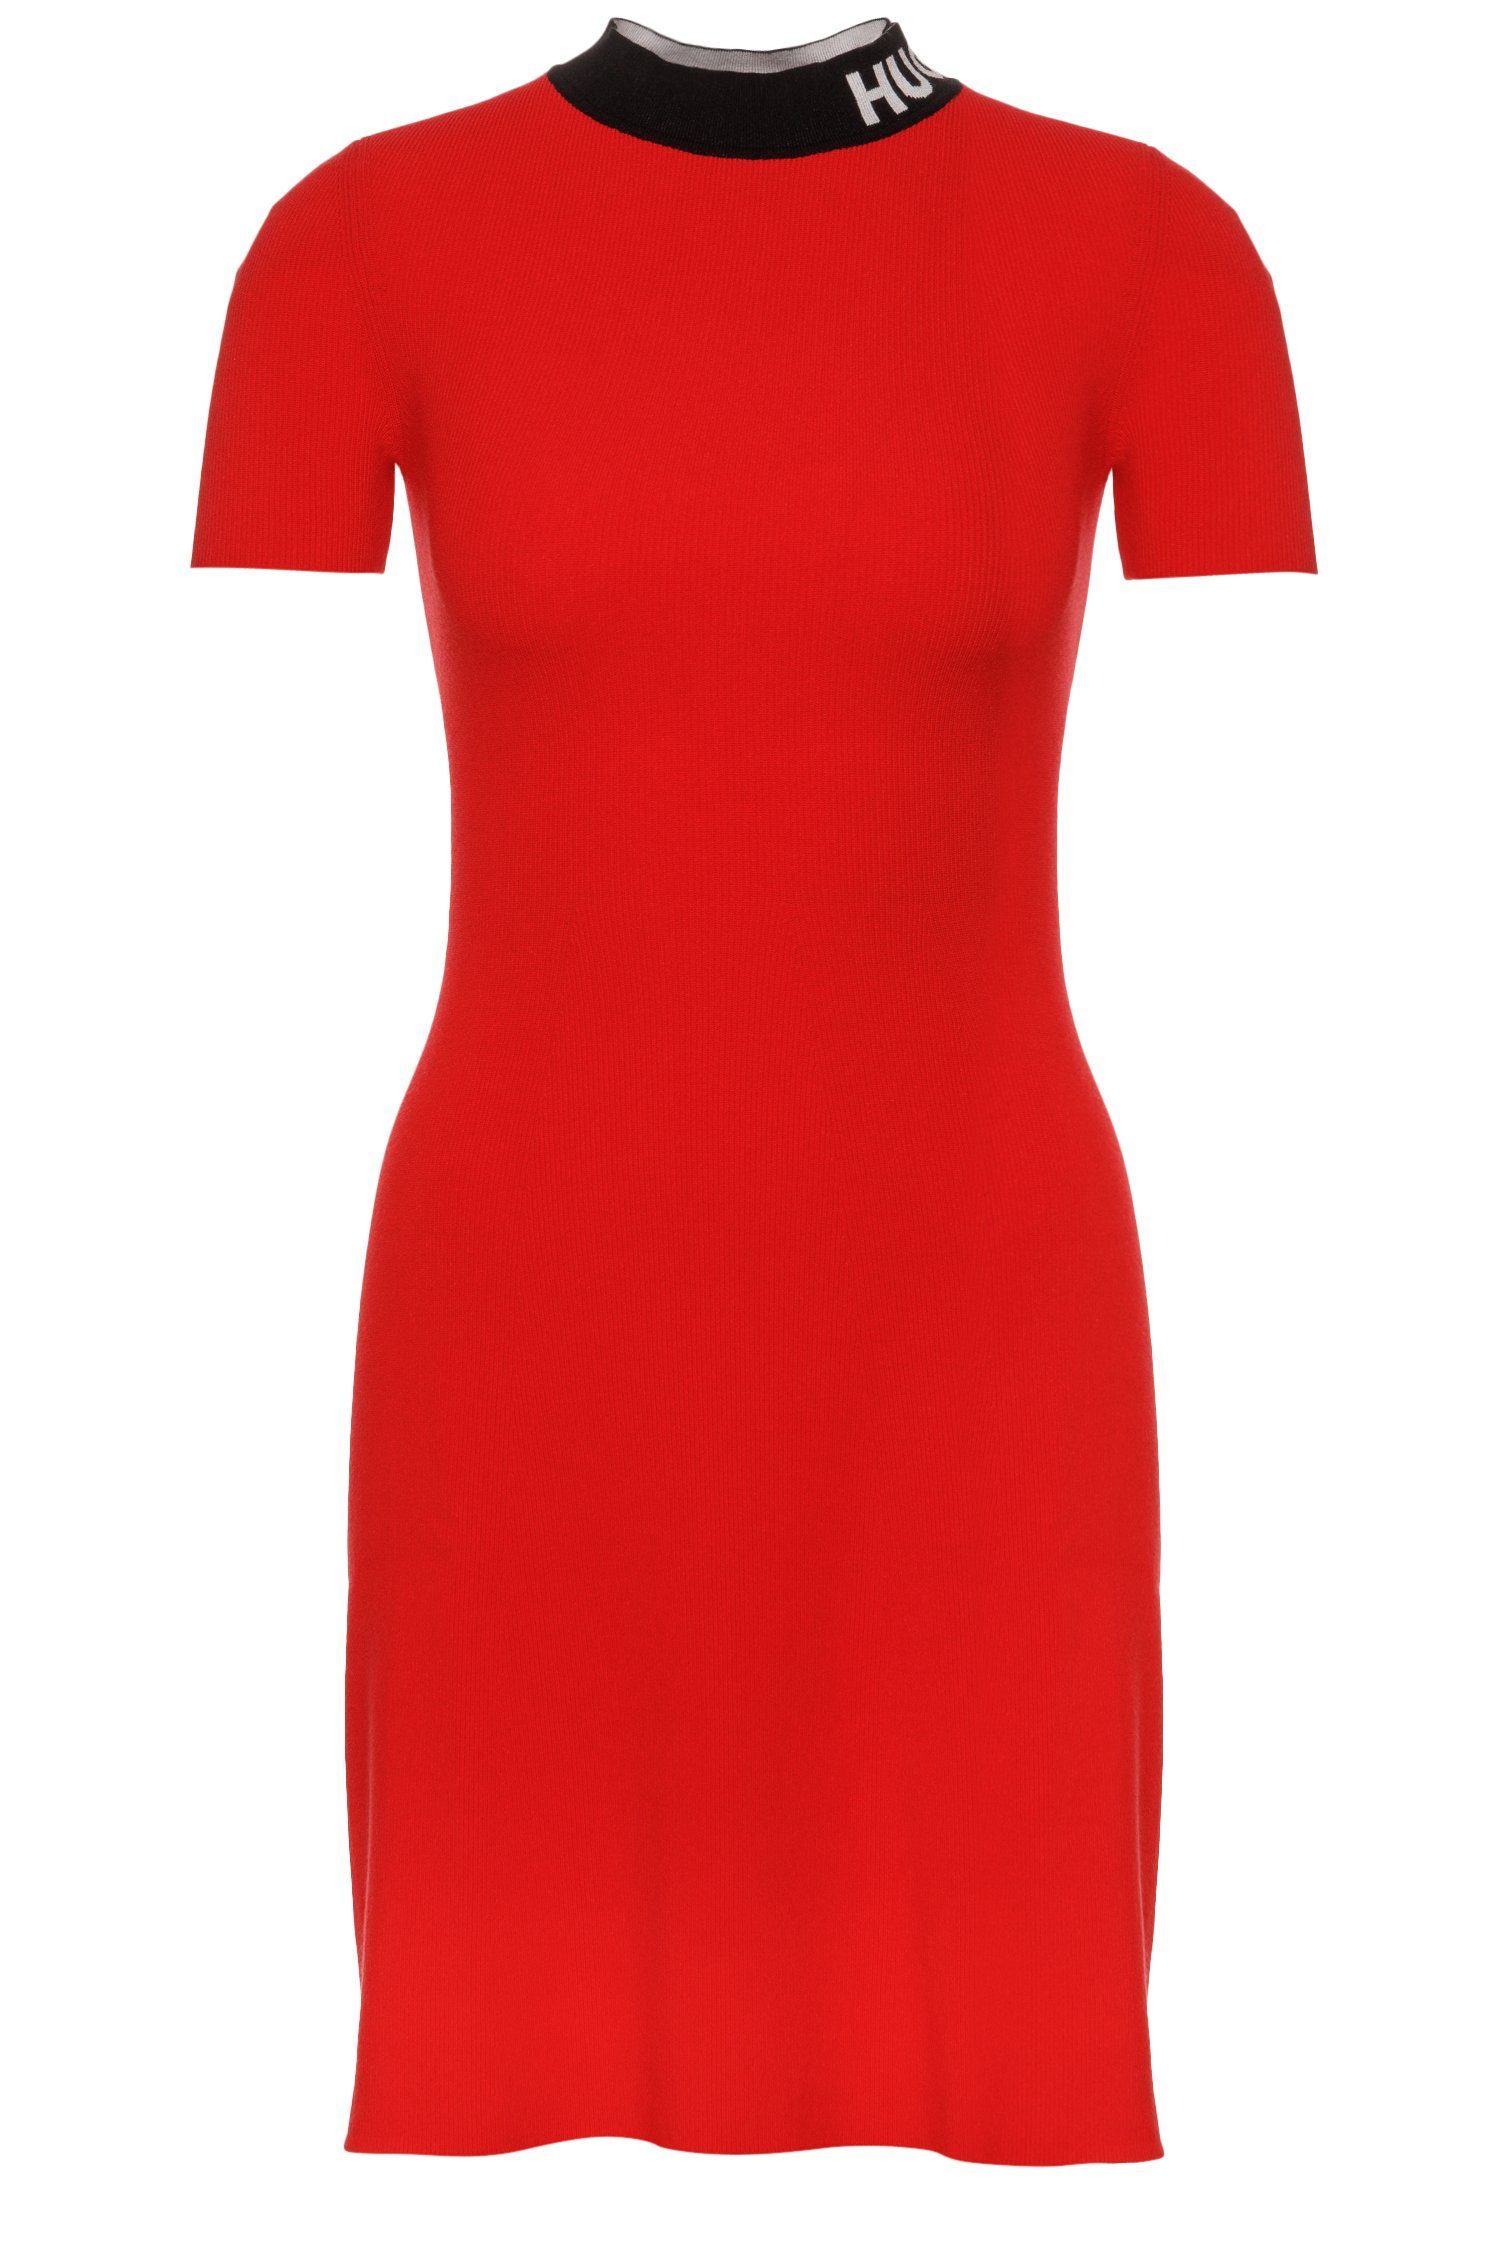 Rote Hugo Boss Kleider für Damen online kaufen | OTTO